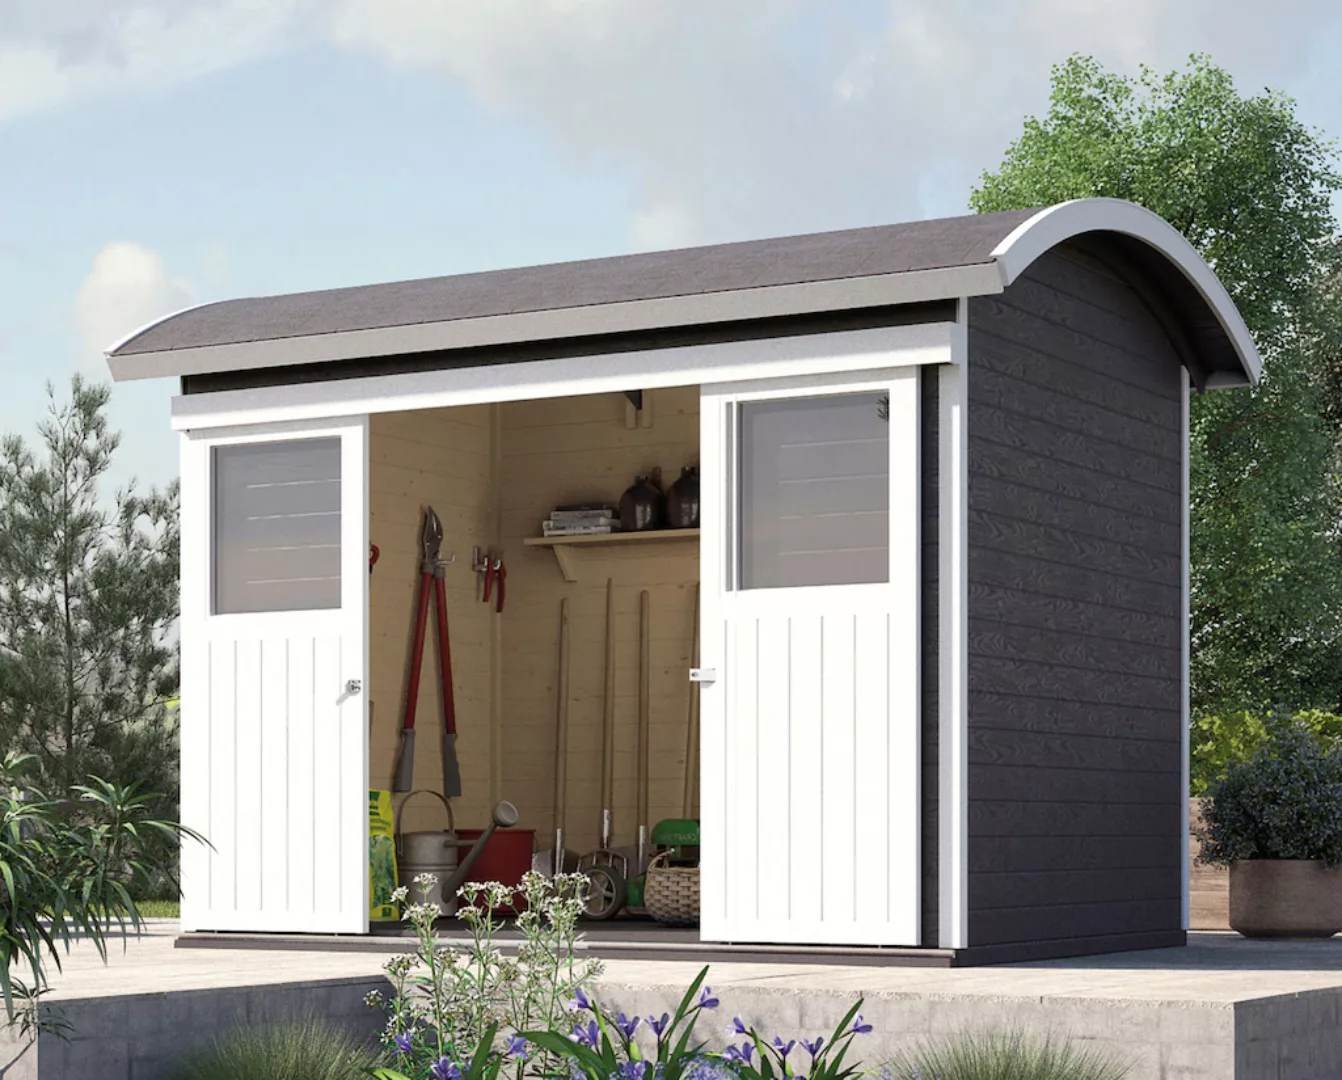 Weka Holz-Gartenhaus Tonnendach Lasiert 295 cm x 241 cm günstig online kaufen